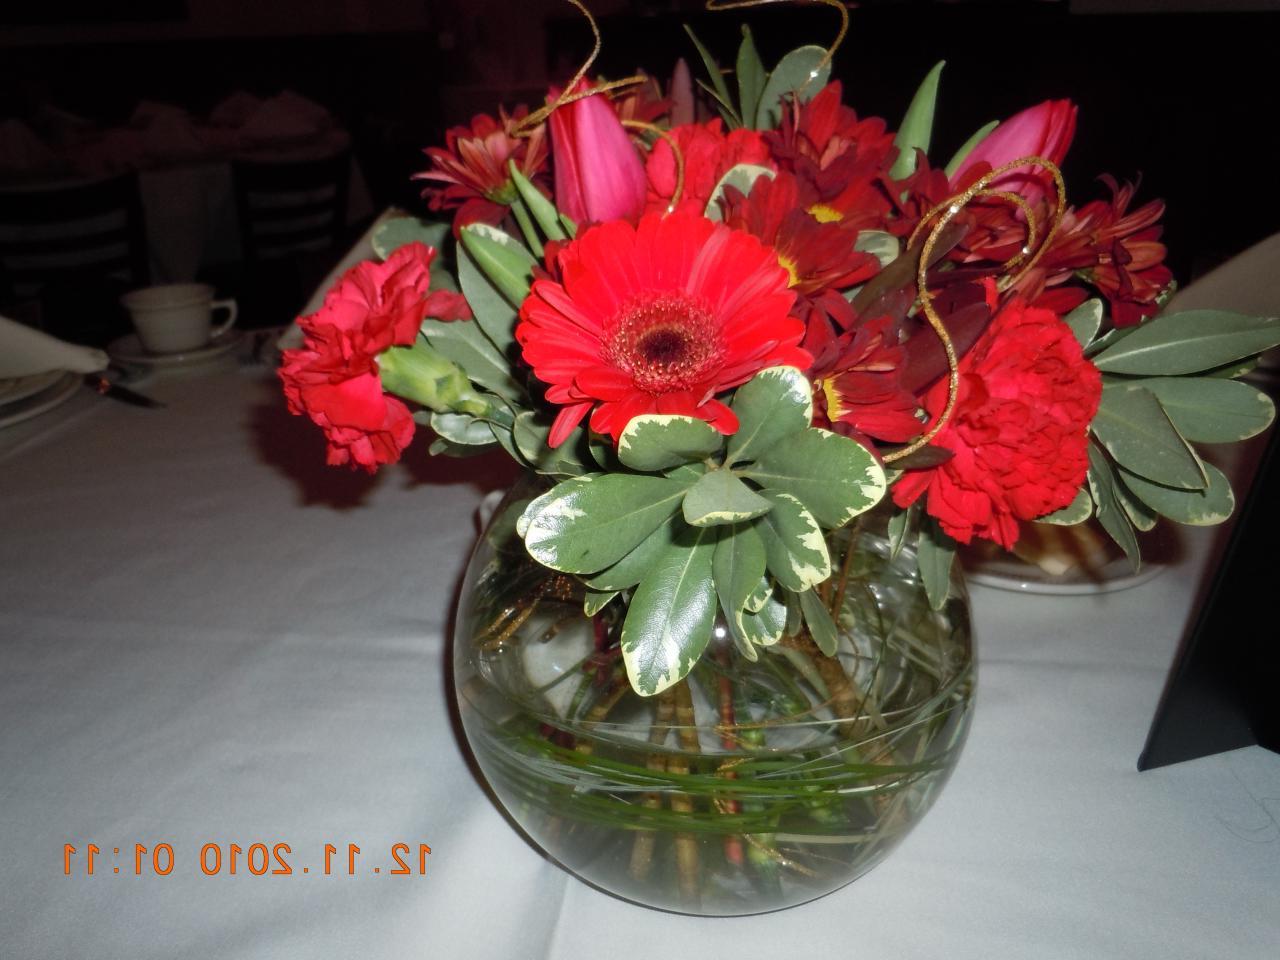 floral arrangements,